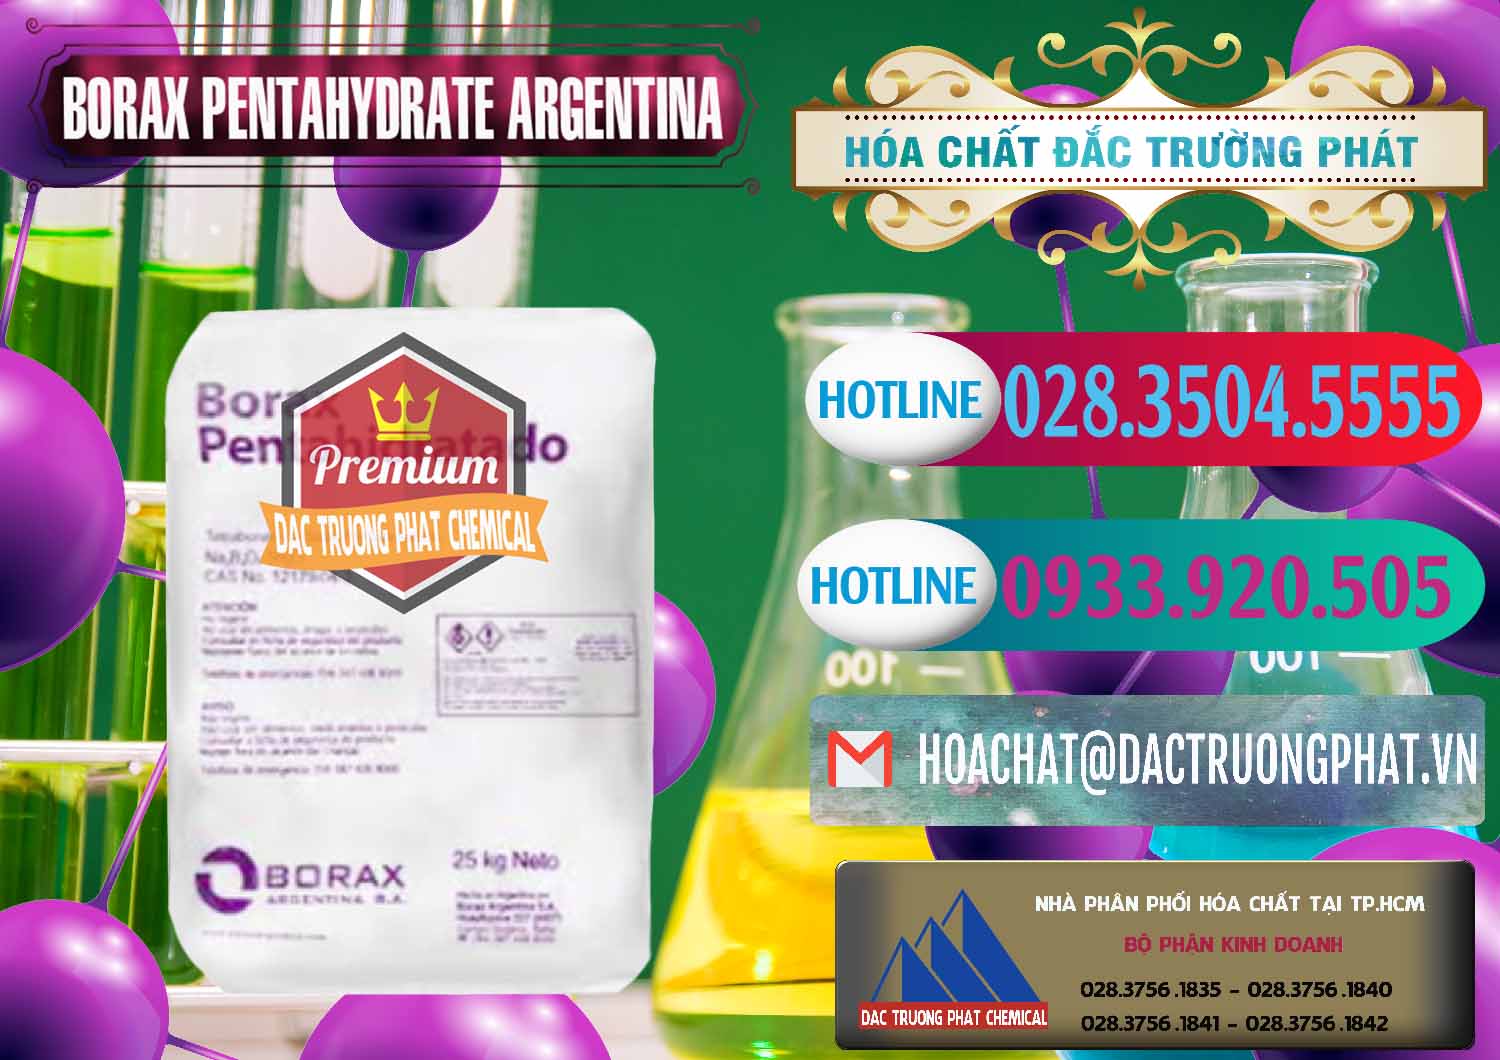 Nơi chuyên cung ứng ( bán ) Borax Pentahydrate Argentina - 0447 - Công ty kinh doanh & cung cấp hóa chất tại TP.HCM - truongphat.vn